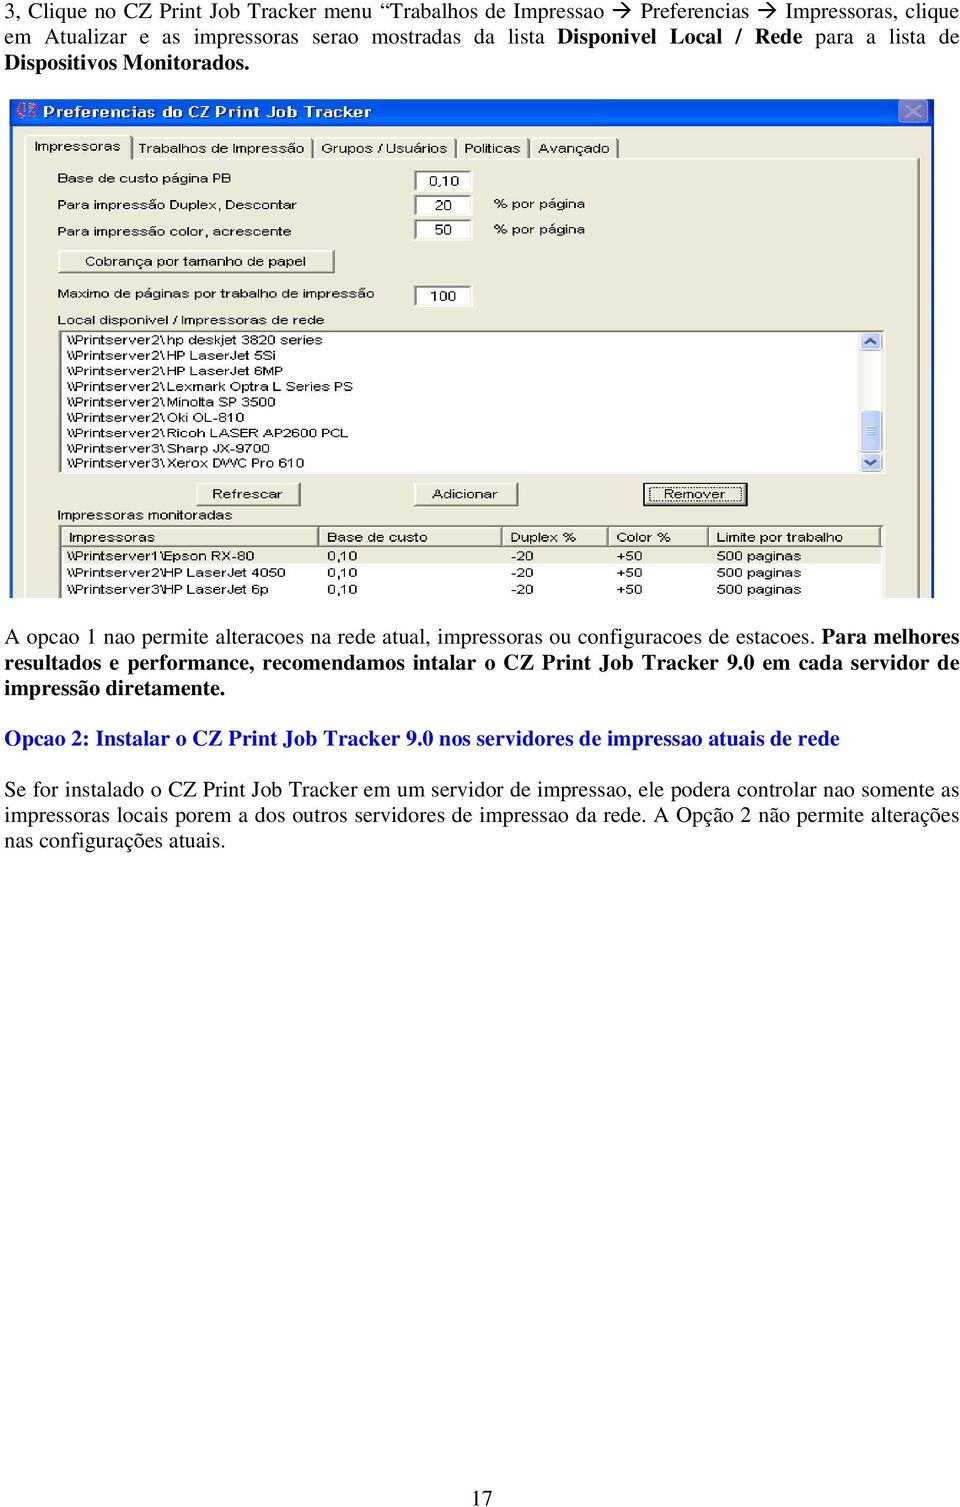 Para melhores resultados e performance, recomendamos intalar o CZ Print Job Tracker 9.0 em cada servidor de impressão diretamente. Opcao 2: Instalar o CZ Print Job Tracker 9.